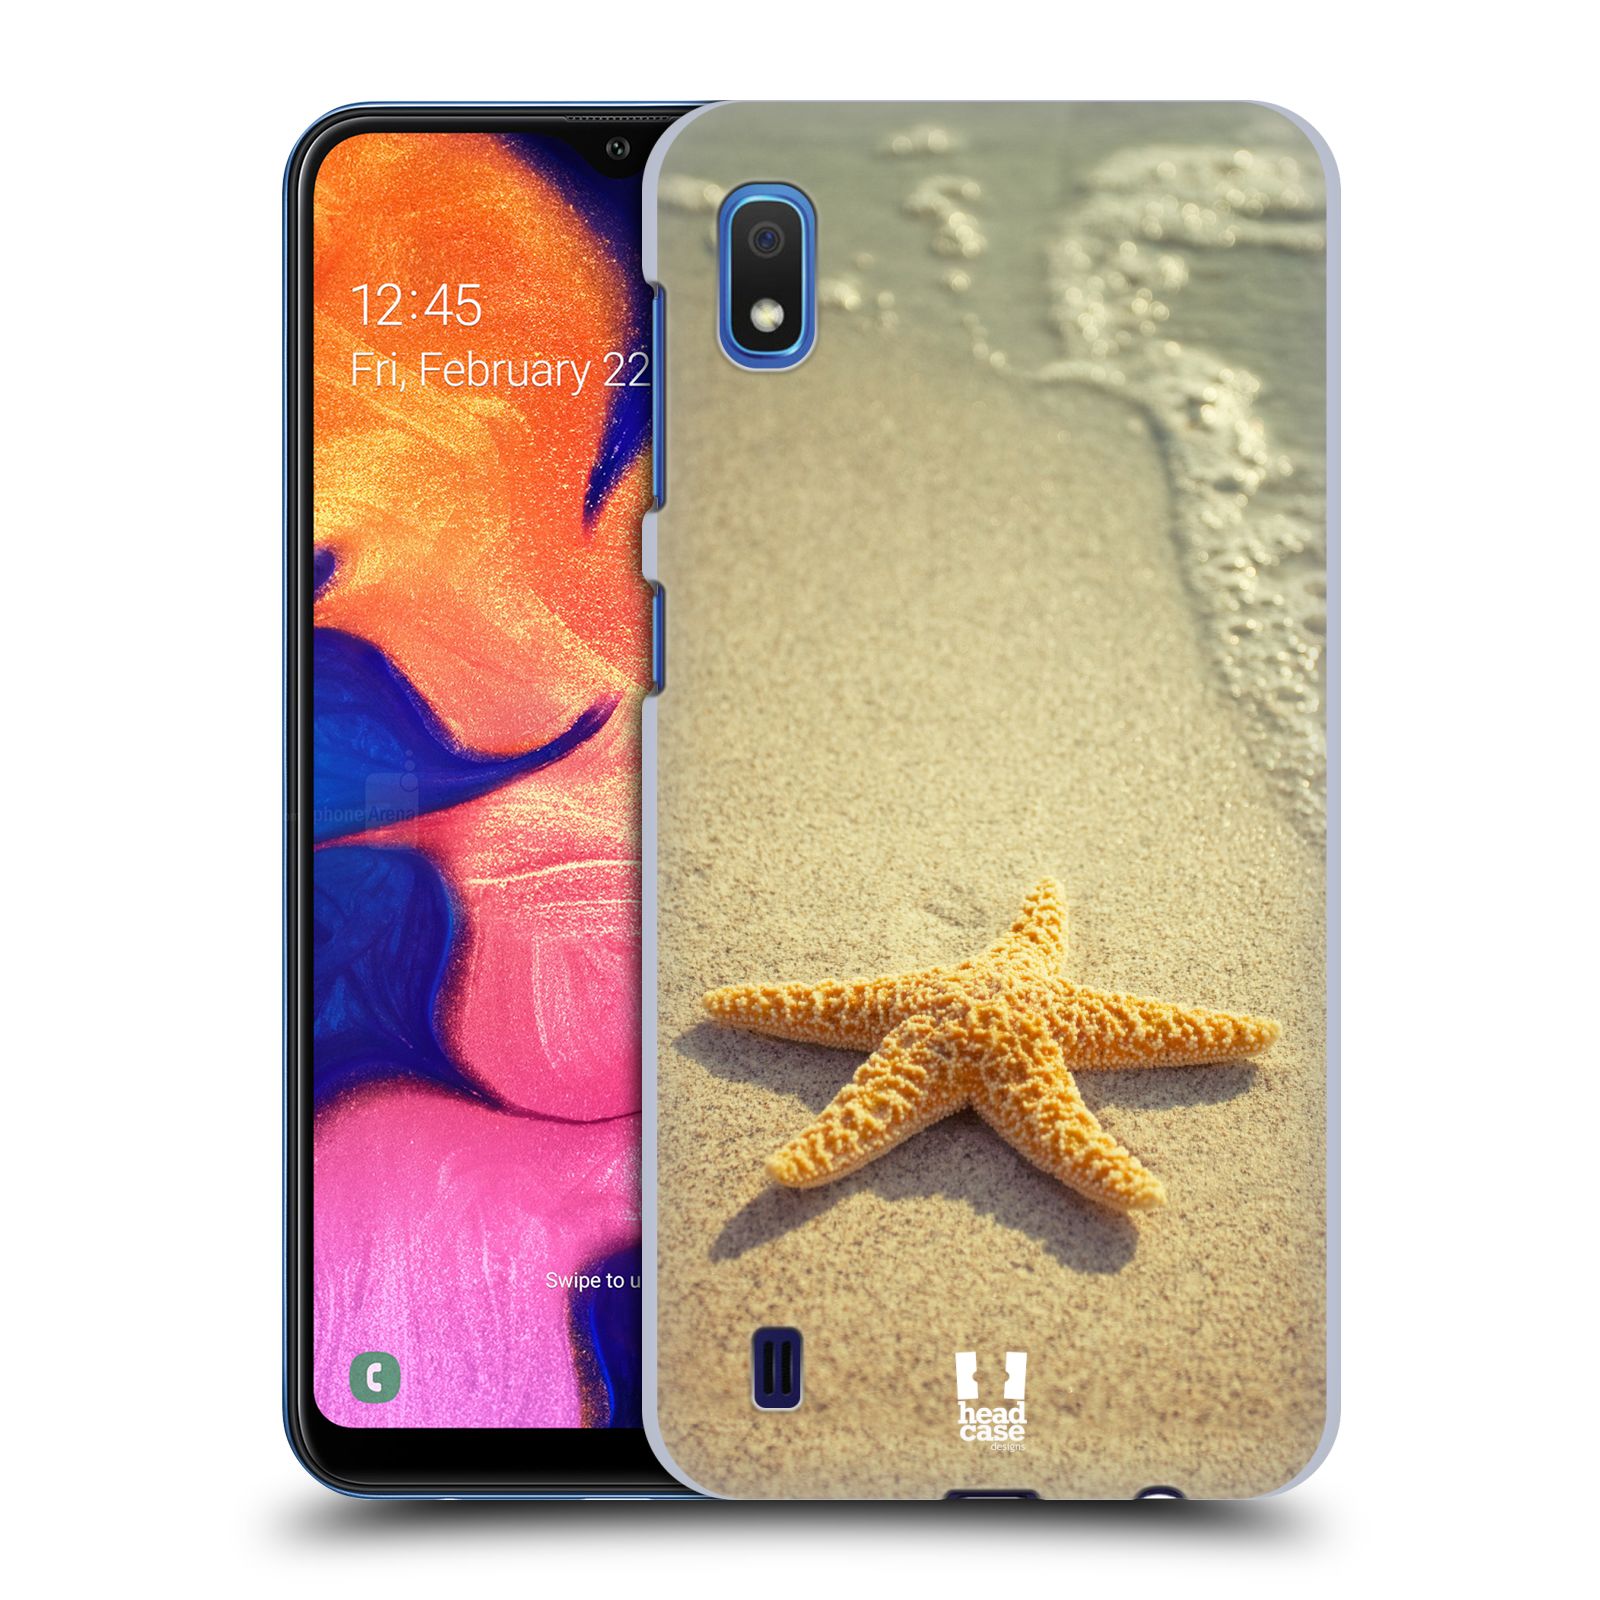 Pouzdro na mobil Samsung Galaxy A10 - HEAD CASE - vzor slavná zvířata foto hvězda na břehu